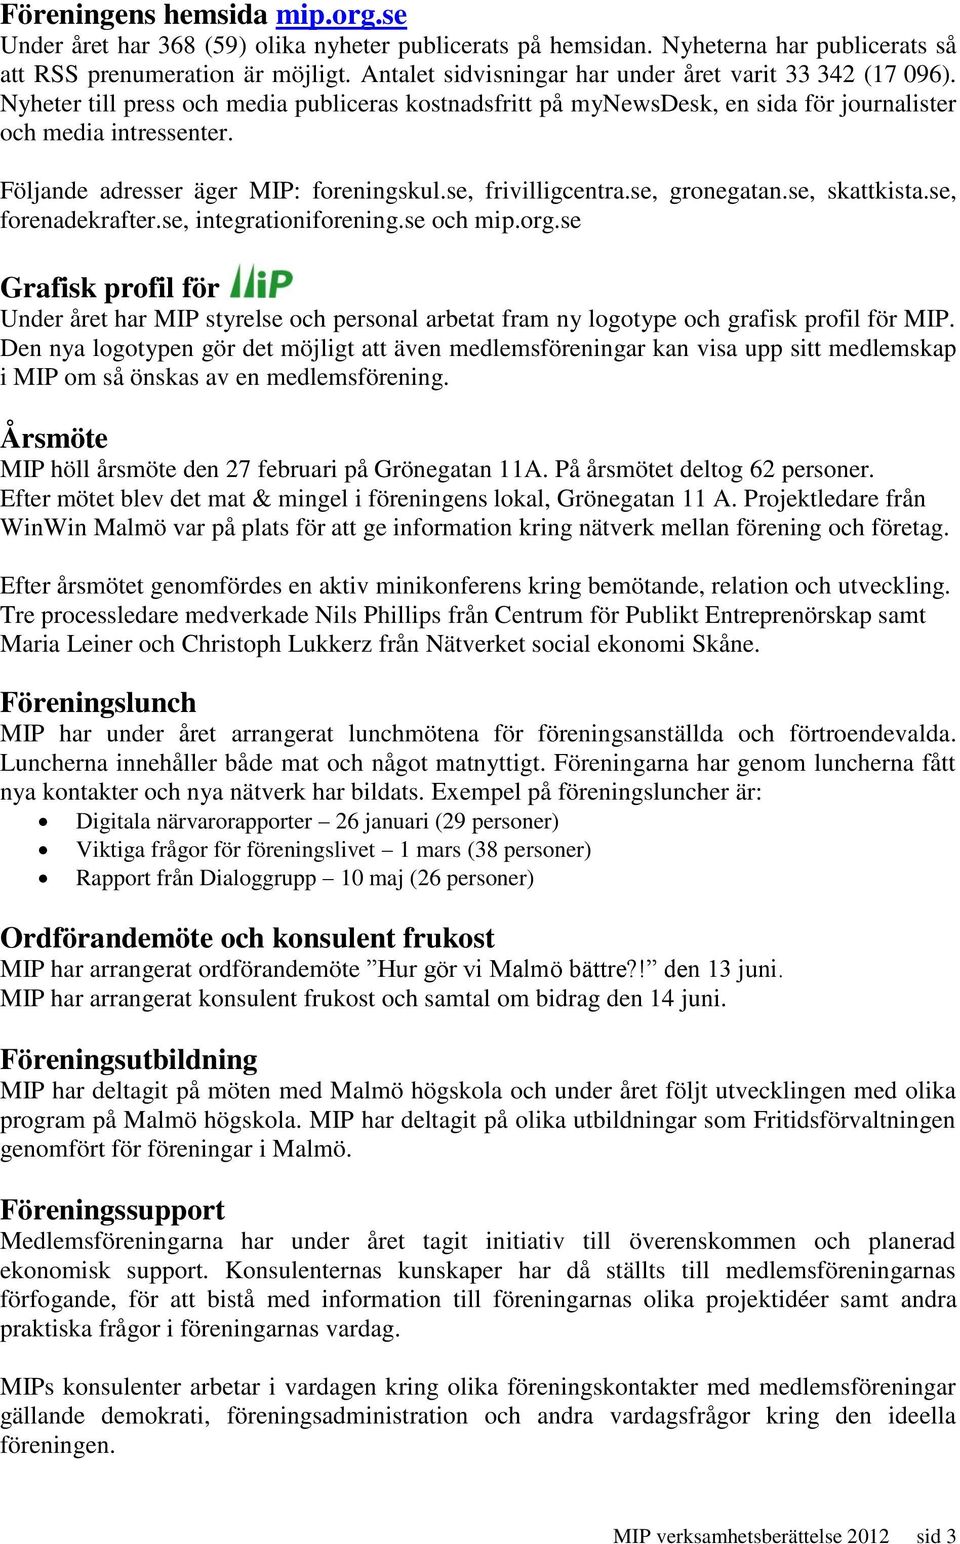 Följande adresser äger MIP: foreningskul.se, frivilligcentra.se, gronegatan.se, skattkista.se, forenadekrafter.se, integrationiforening.se och mip.org.